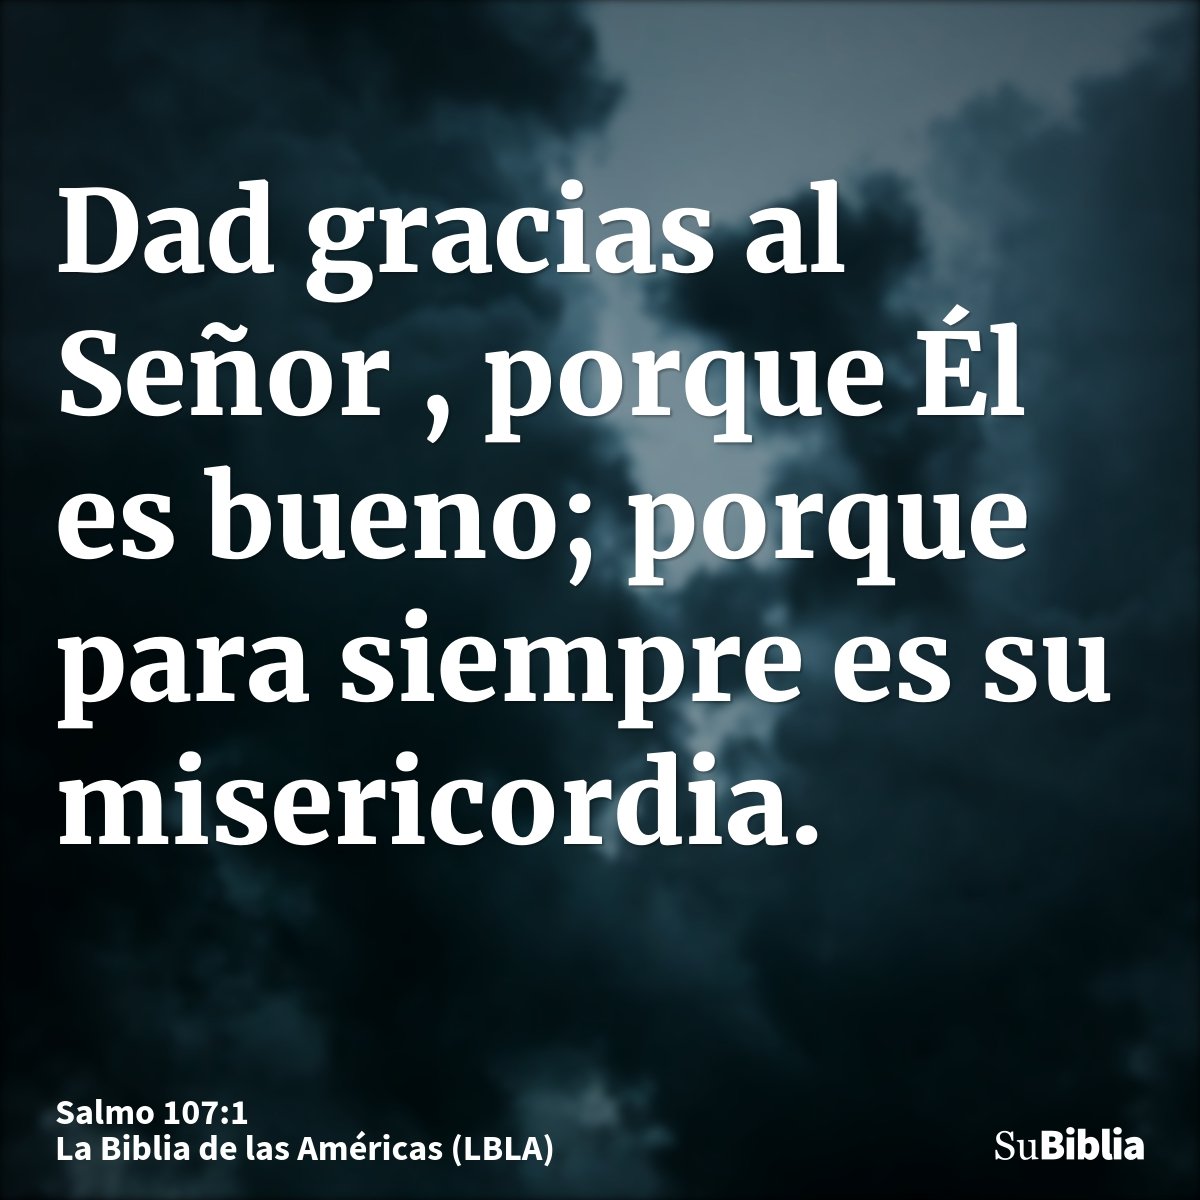 Dad gracias al Señor , porque Él es bueno; porque para siempre es su misericordia.